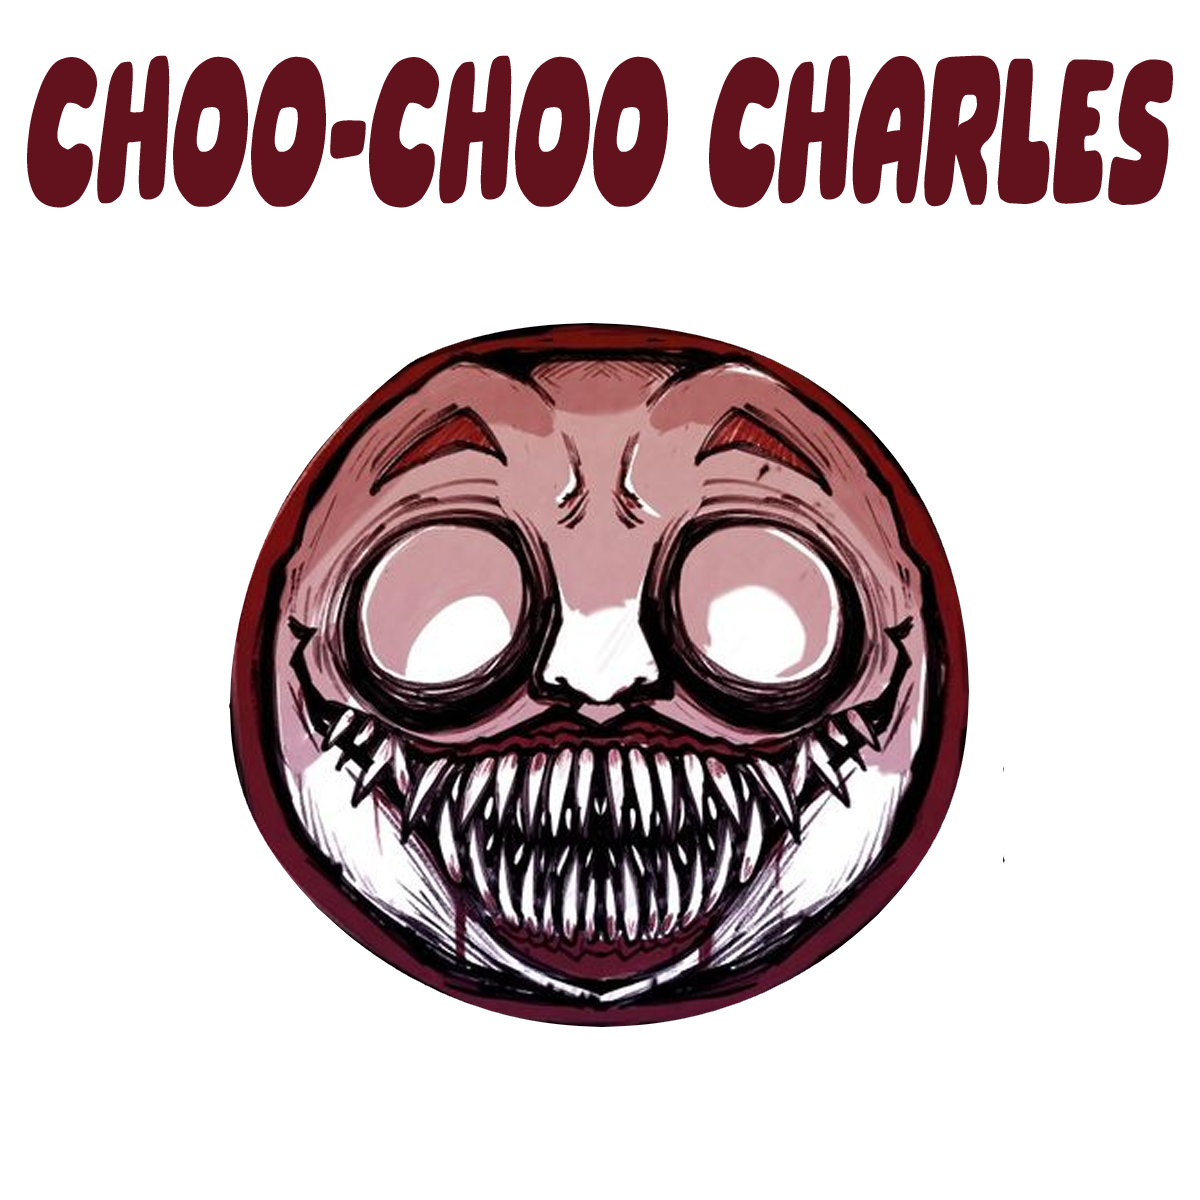 Bilder Choo-Choo Charles auf transparentem hintergrund